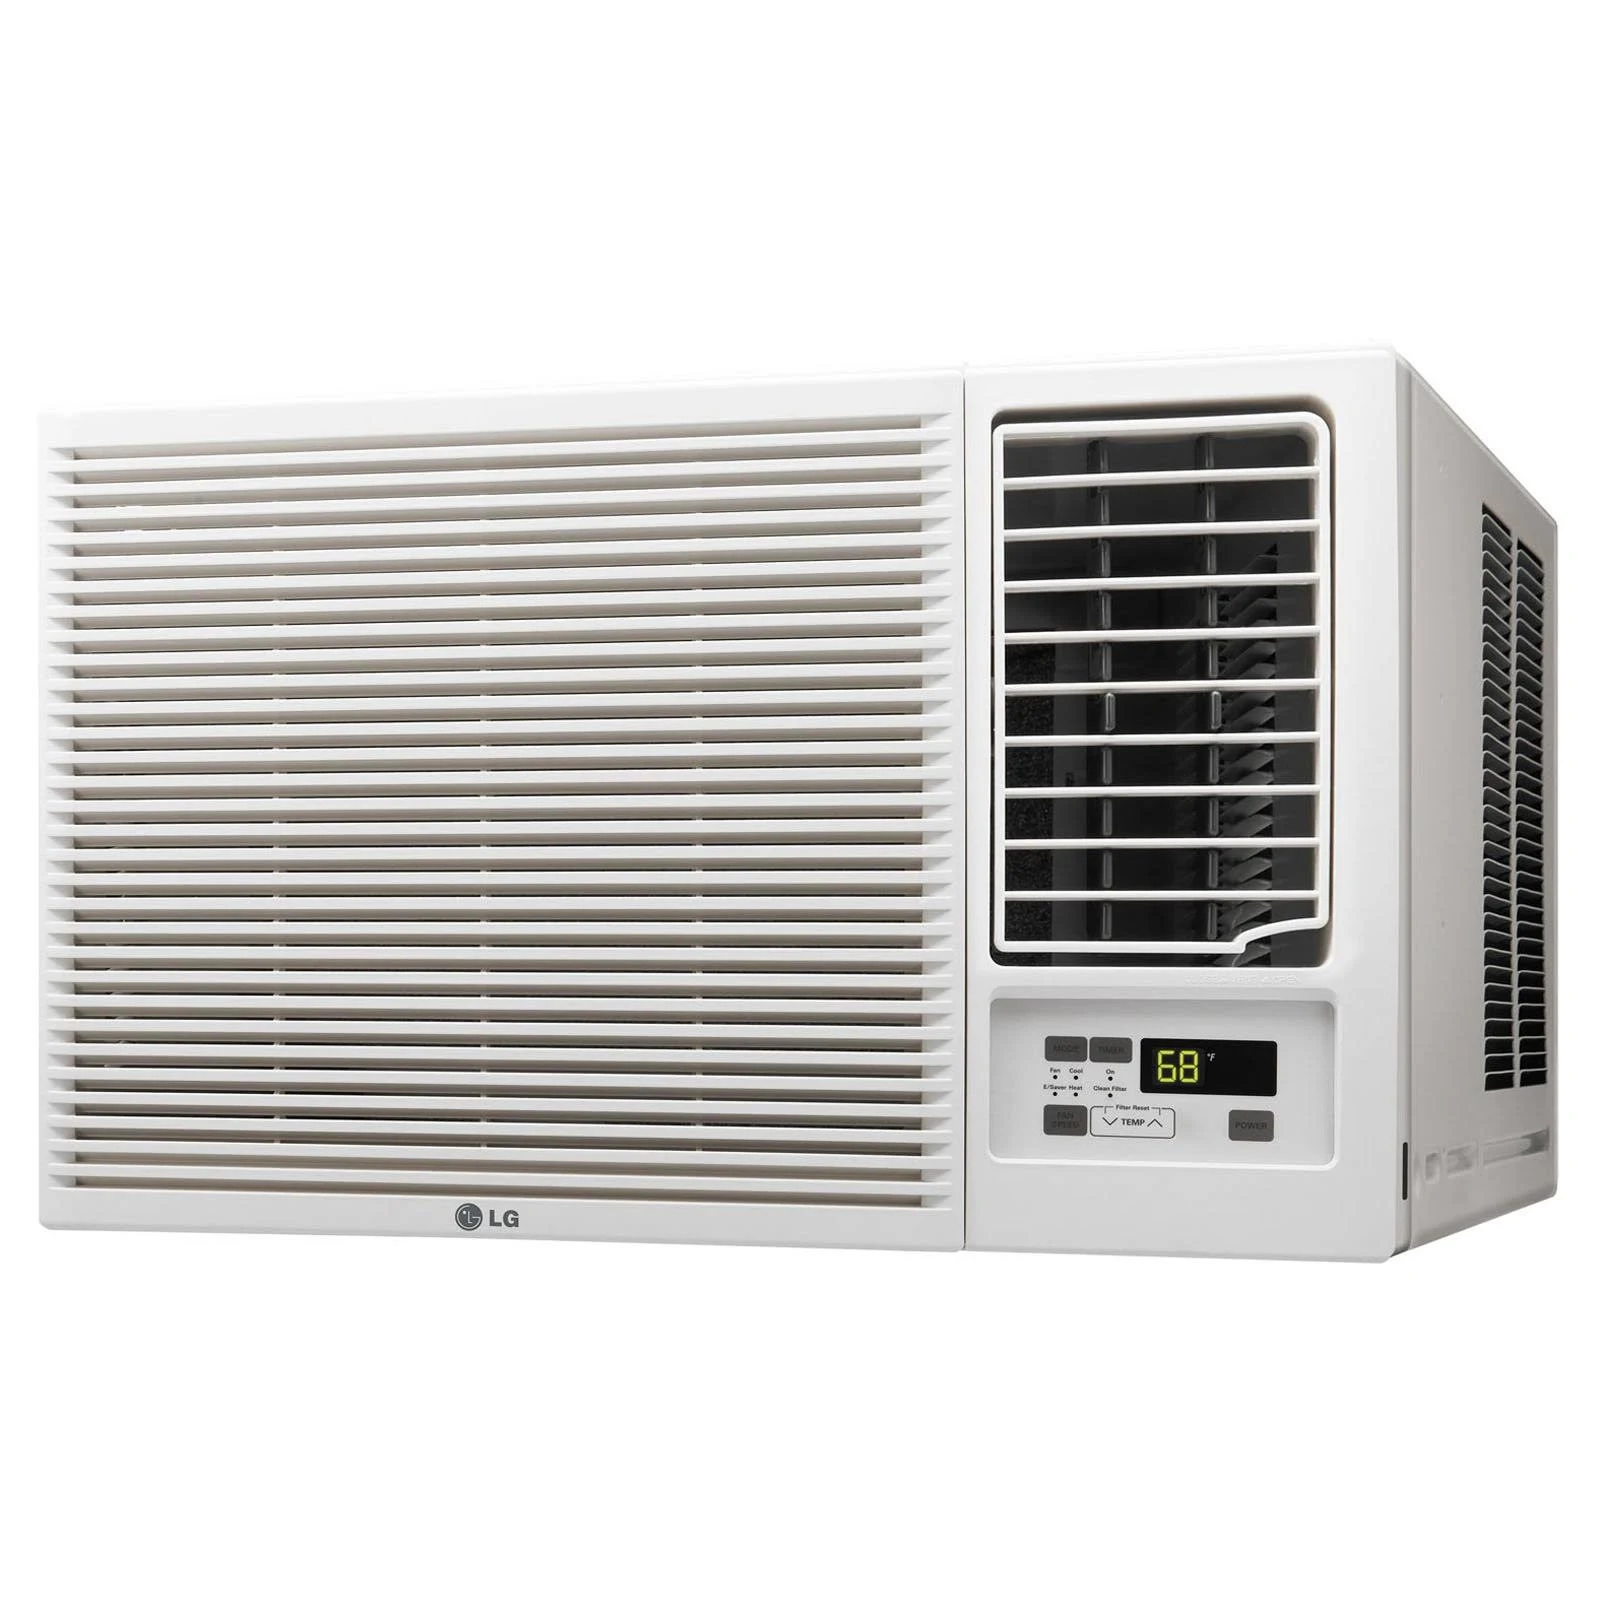  LG Electronics مكيف هواء مثبت على النافذة بقوة 12000 وحدة حرارية بريطانية من إل جي مع وظيفة حرارية 11200 وحدة حرارية بريط...